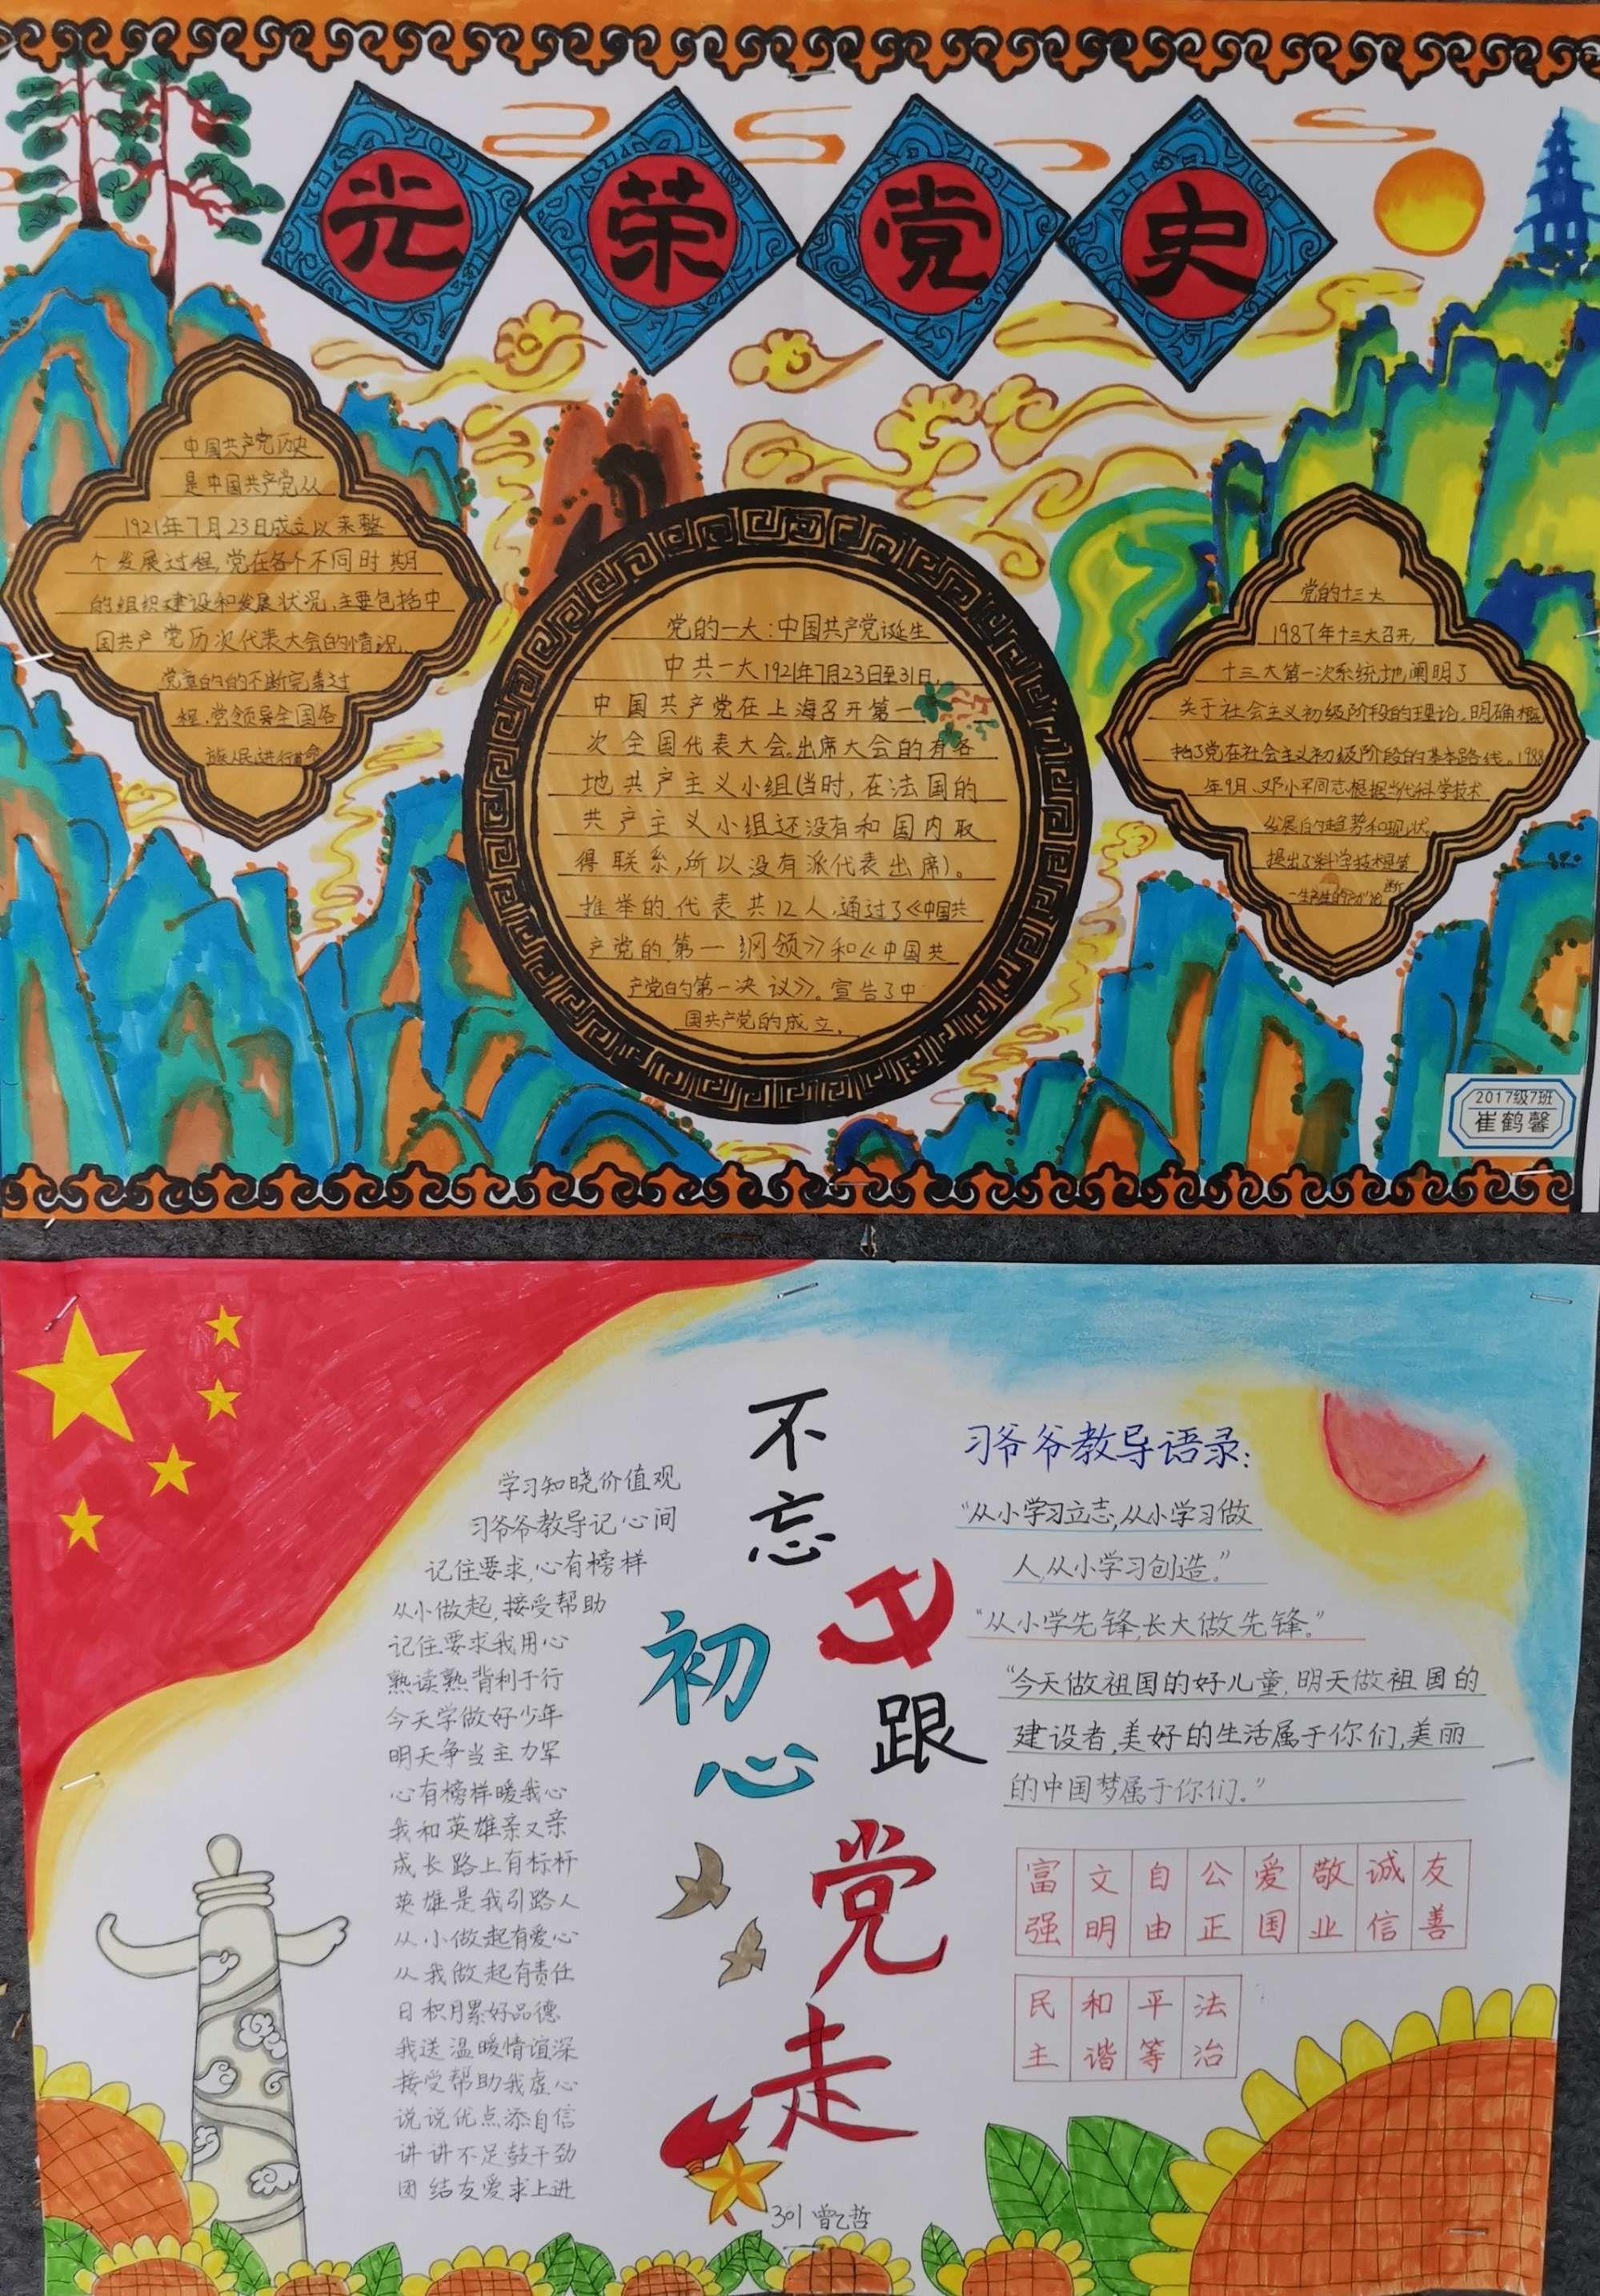 【童心向党】百外春蕾小学向建党100周年献礼